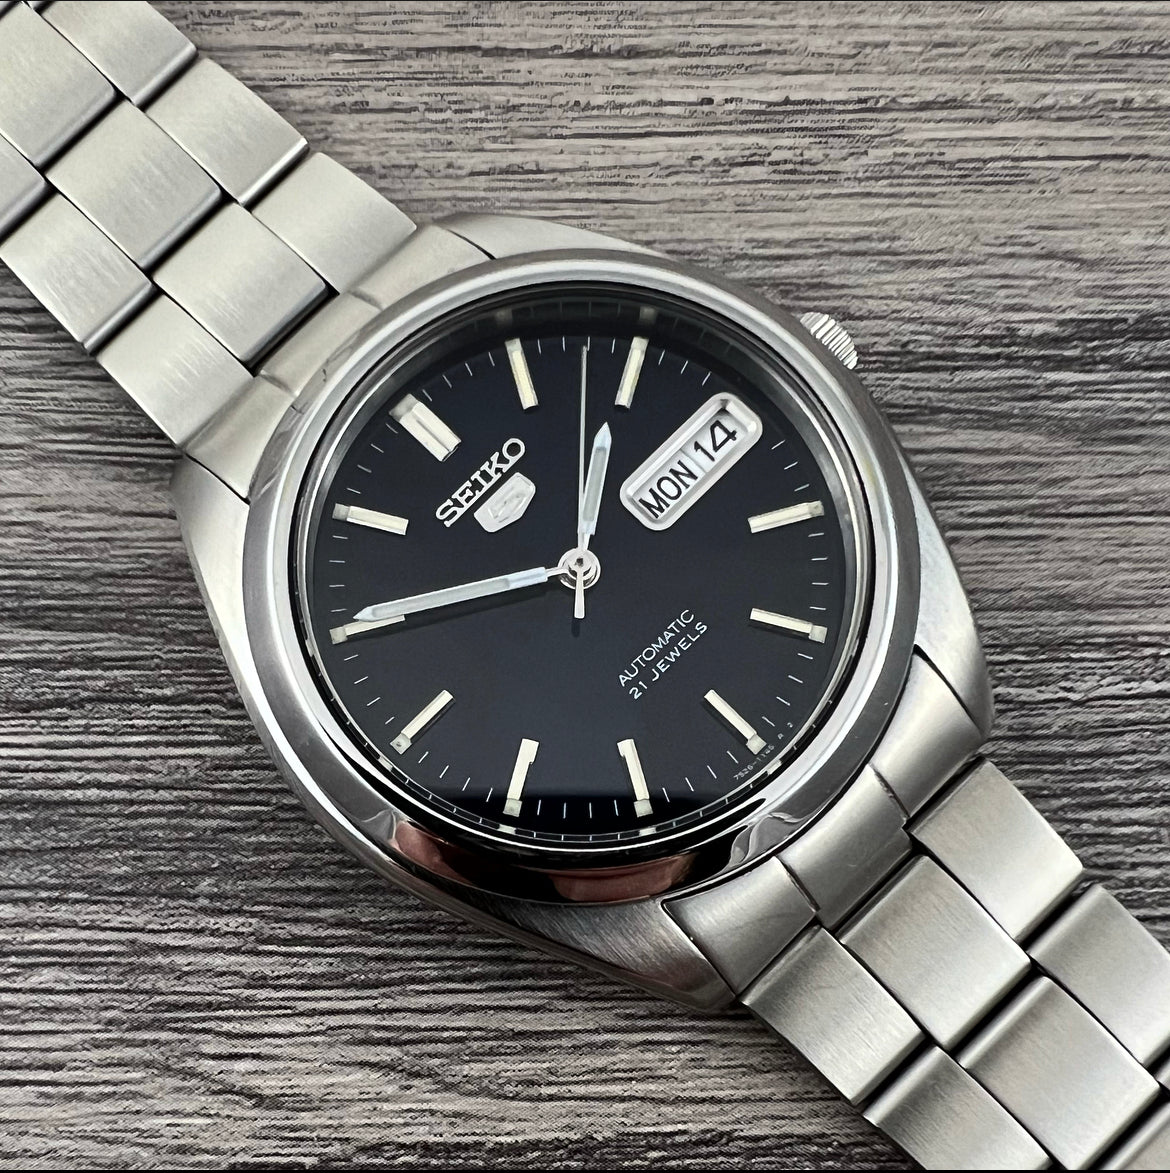 2000 Seiko 5 7S26-0060 Automatic – Mornington Watches